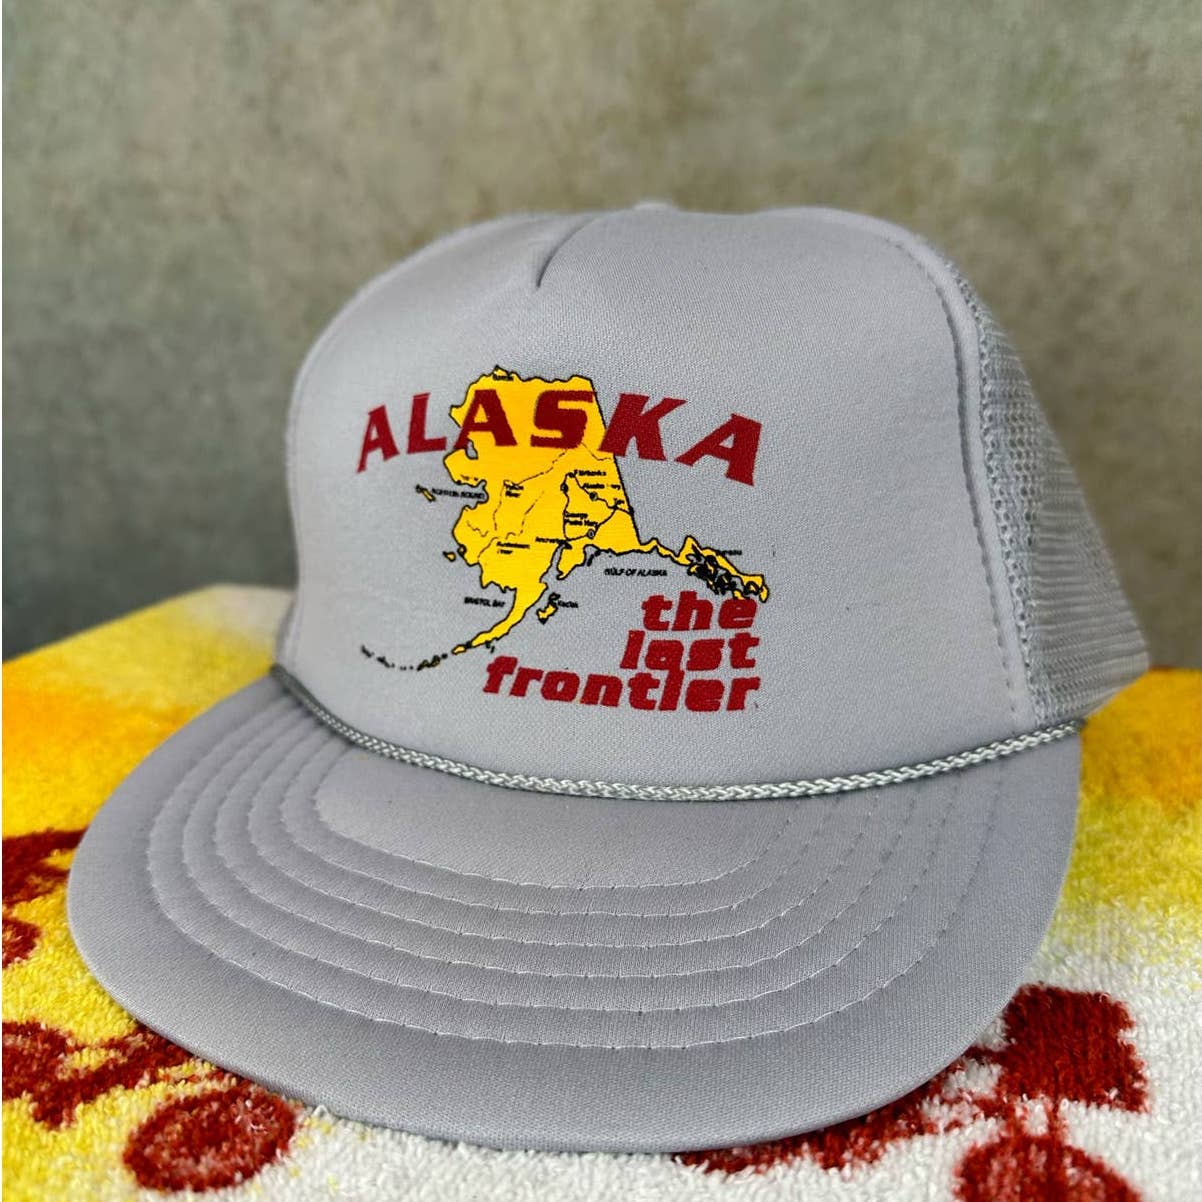 Vintage 80s Alaska Trucker Hat